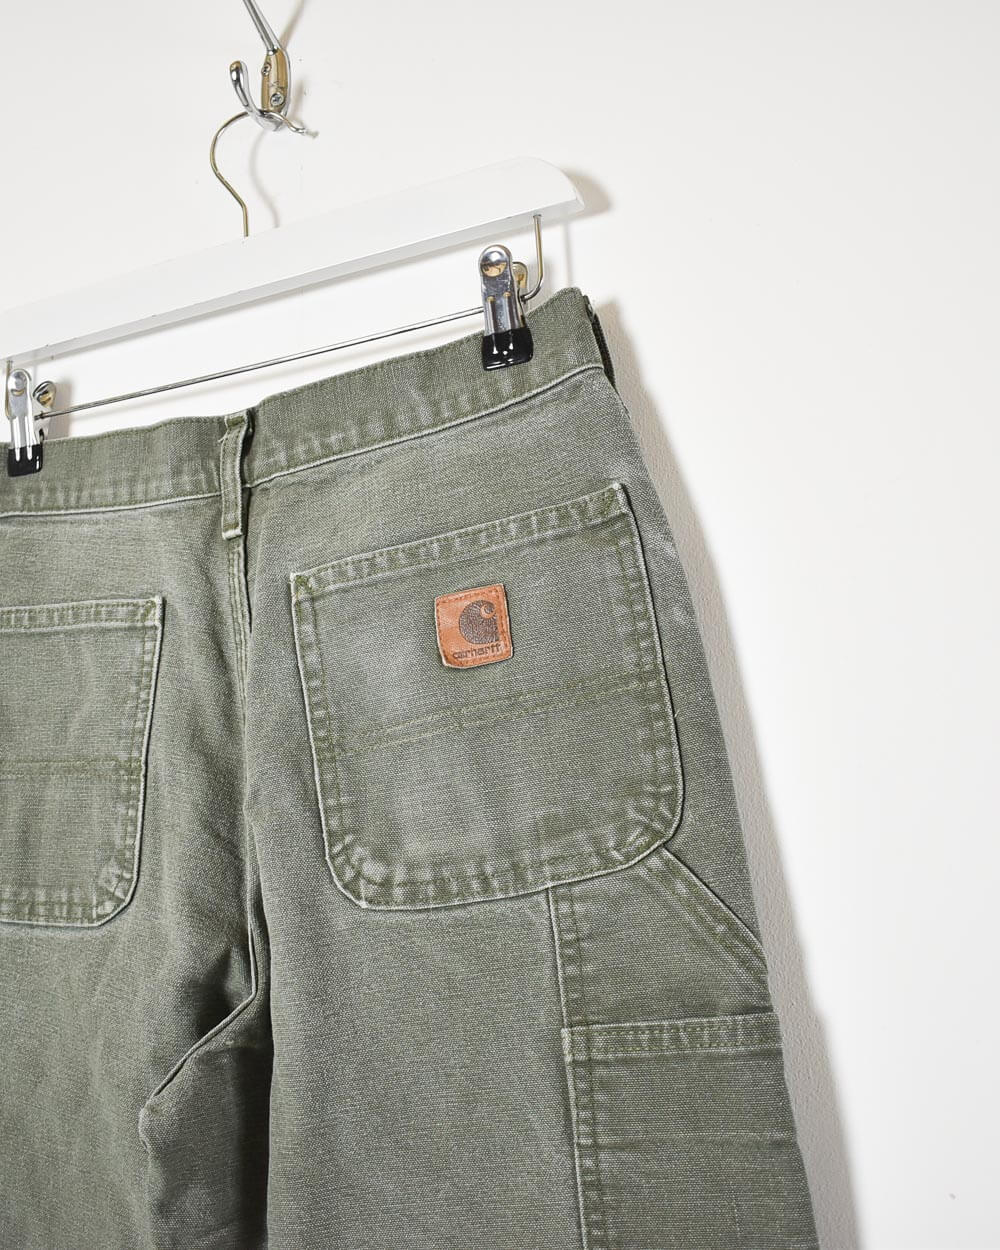 Green Carhartt Women's Carpenter Jeans - W30 L30